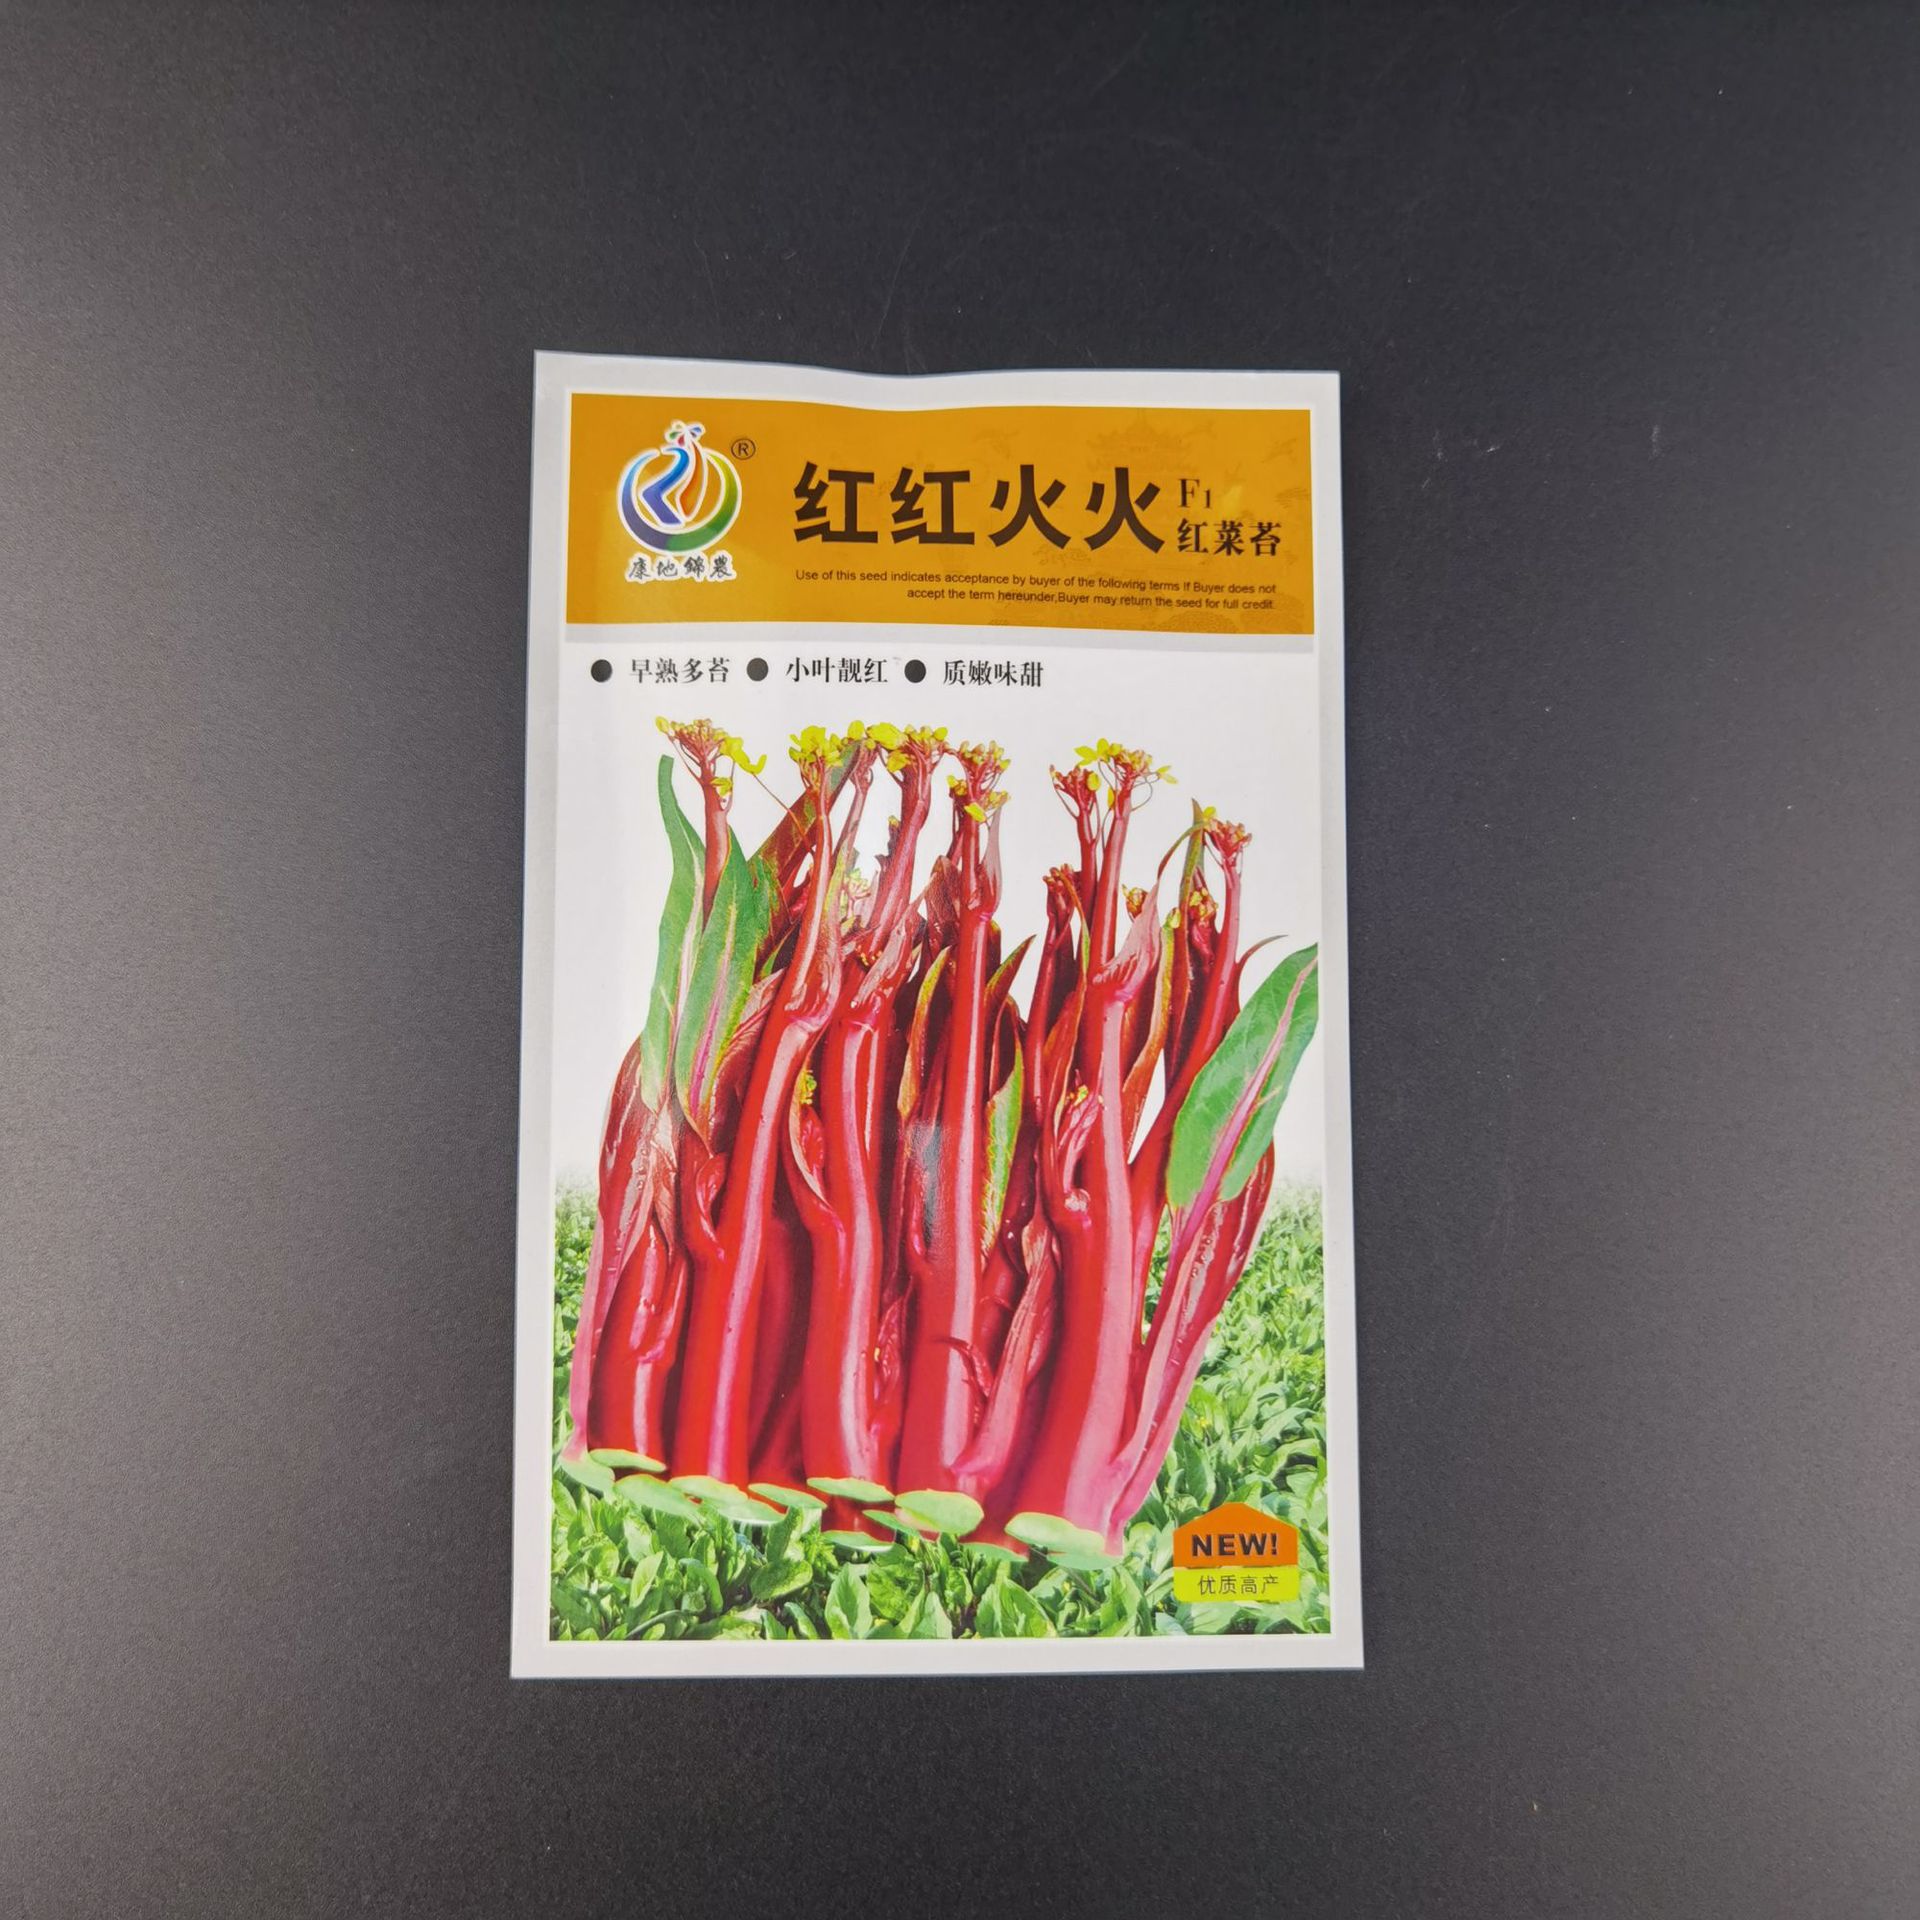 康地红红火火红菜苔一代杂交种子蔬菜种子早熟多苔小叶靓红质嫩甜